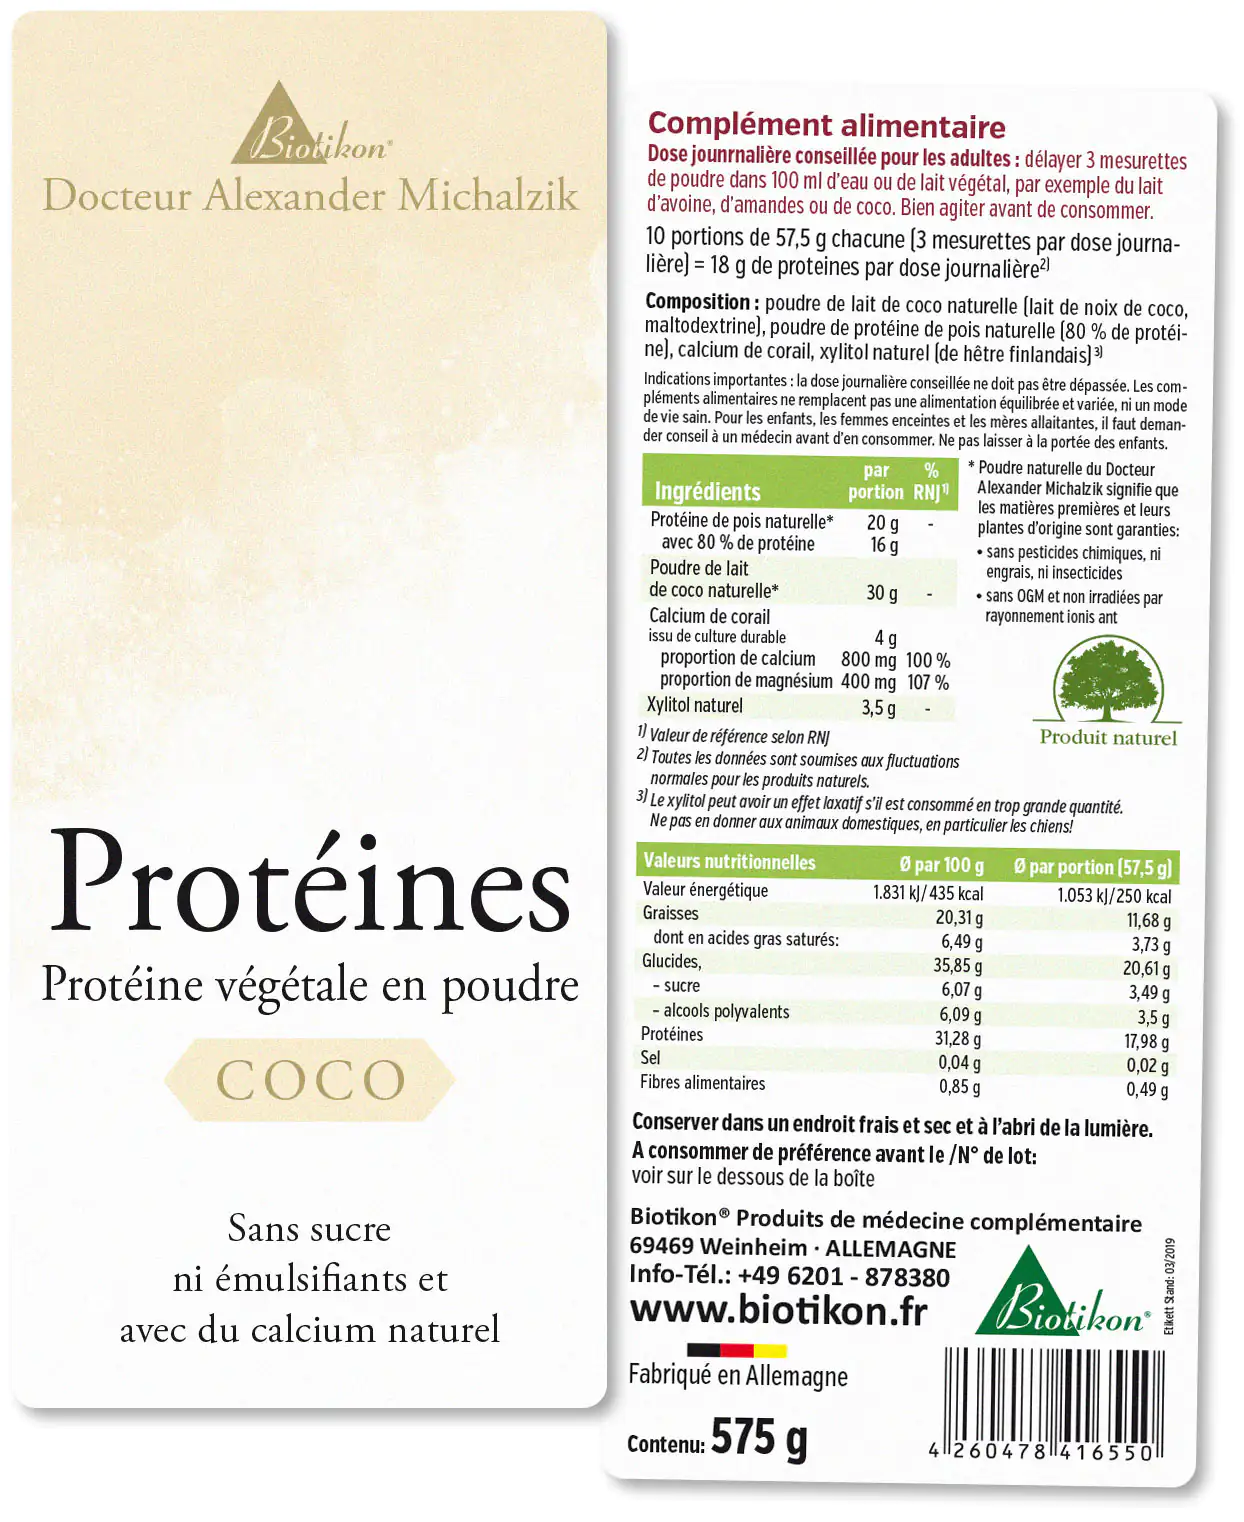 Protéines - en lot de 3, 2x Coco + Cacao